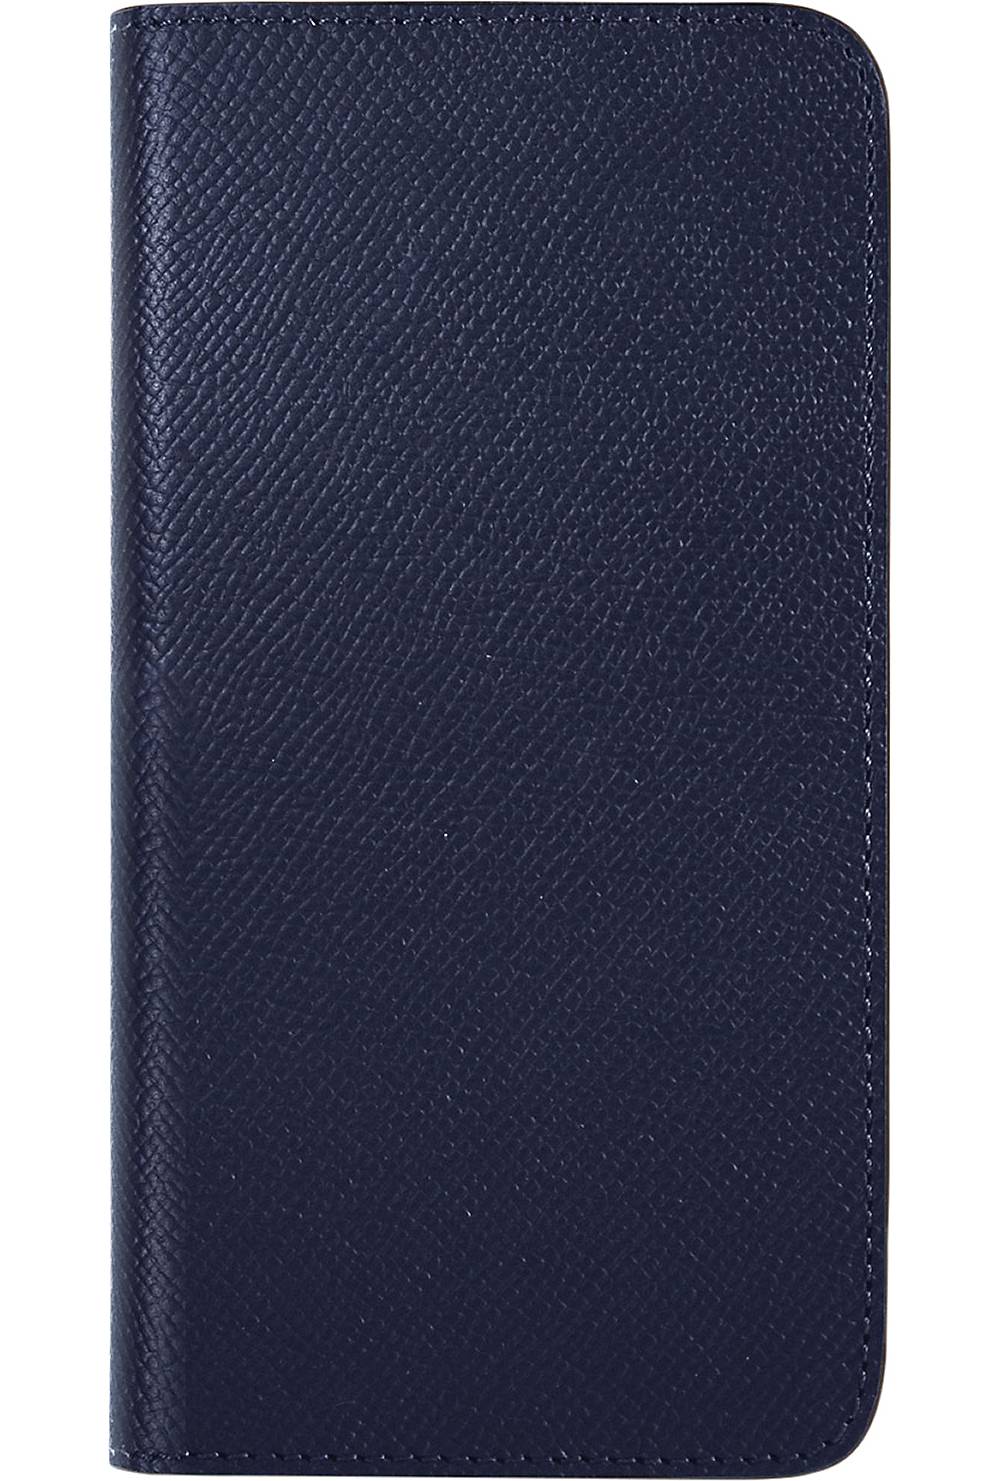 BONAVENTURA, Handyhülle Noblessa Diary Case (iphone 13 Pro Max) in dunkelblau, Handyhüllen & Zubehör für Damen